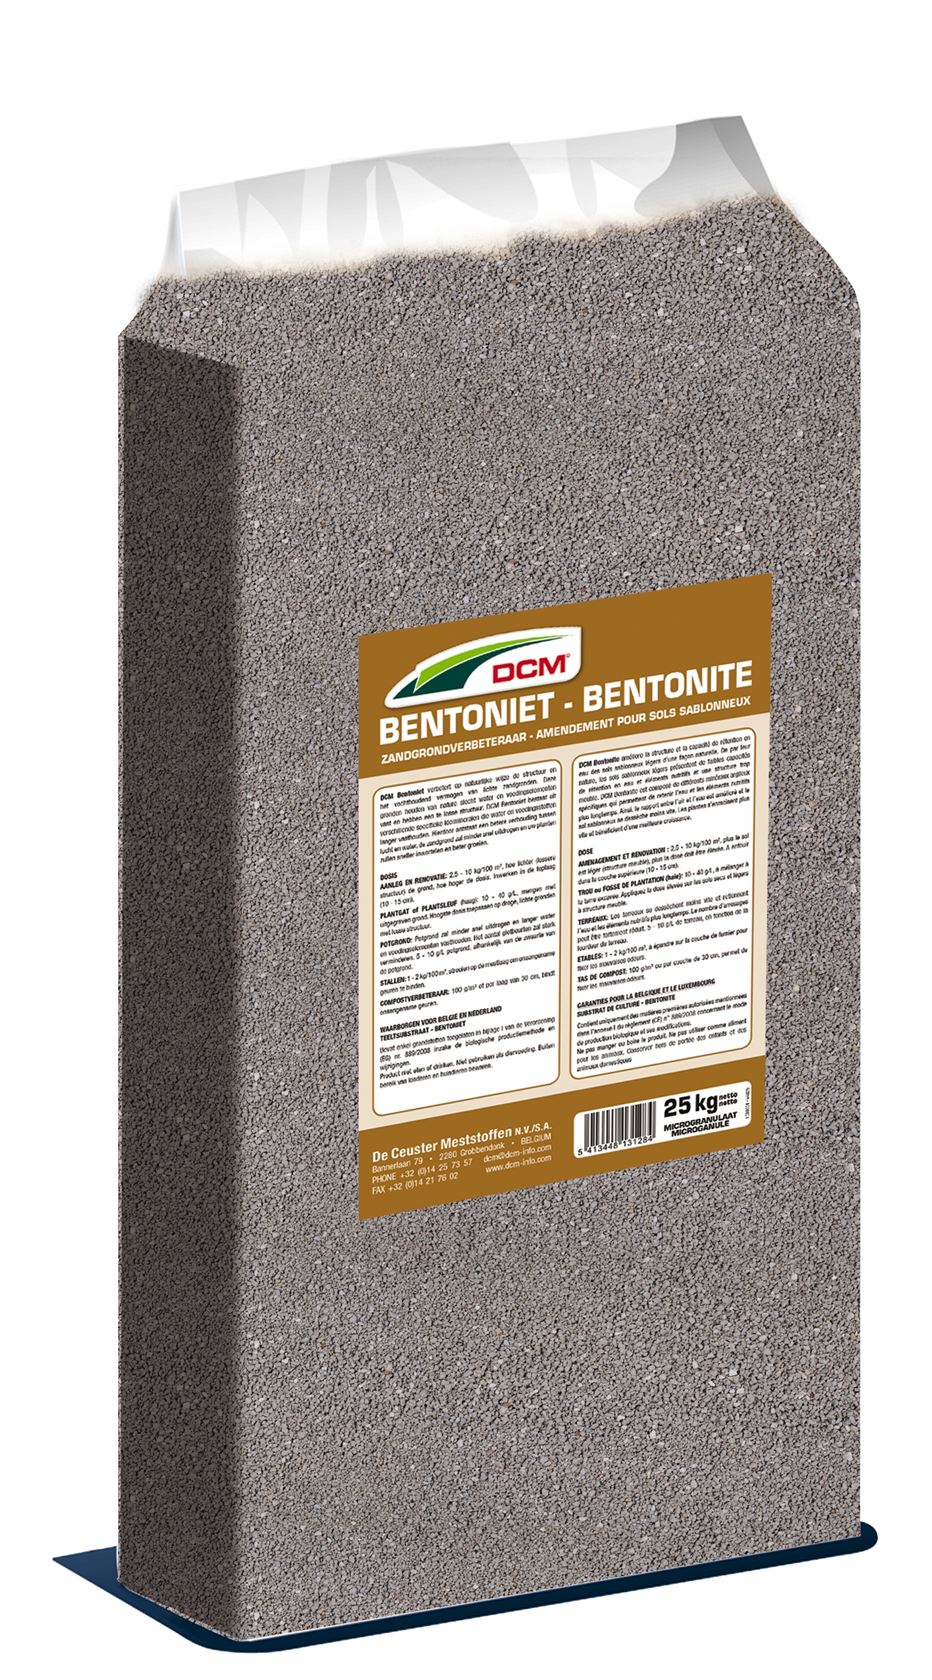 Bentonite sand soil conditioner 25kg - Bio